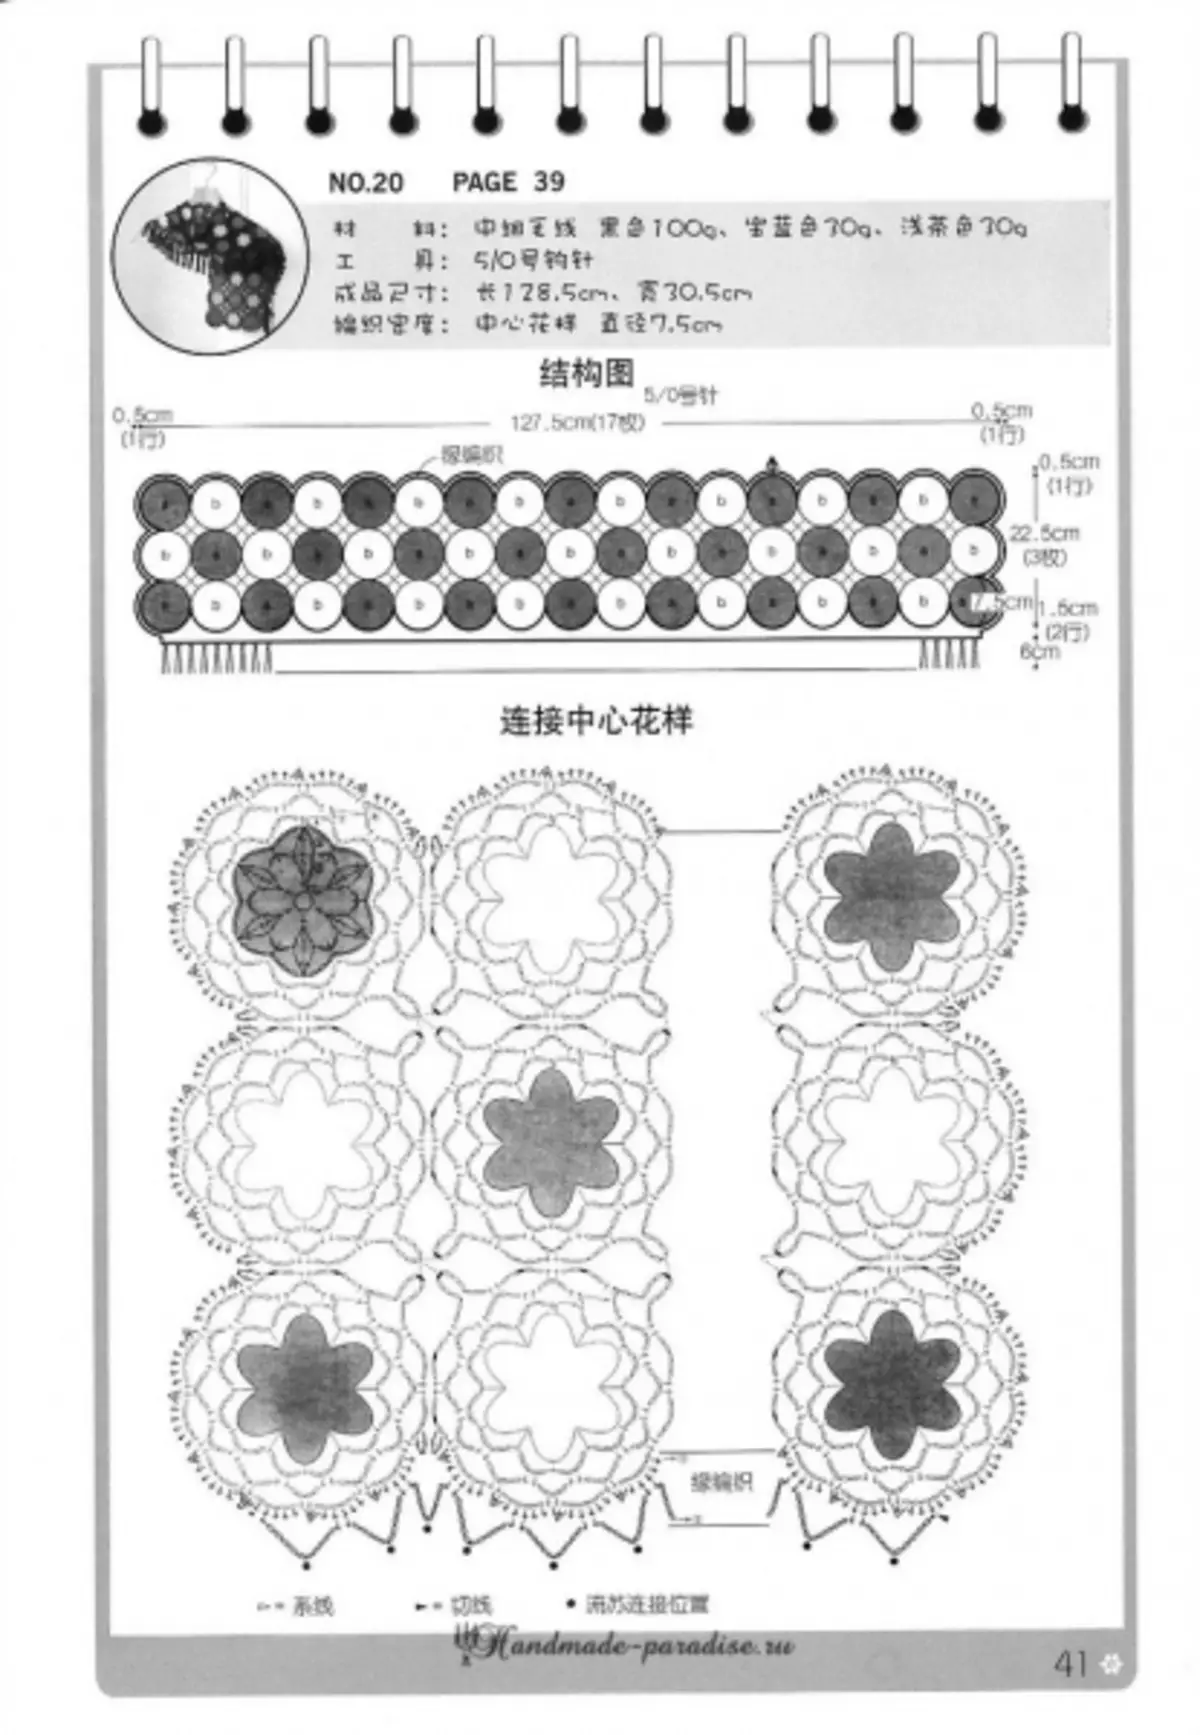 Shawli, poncho եւ capes ճապոնական ամսագրում սխեմաների հետ